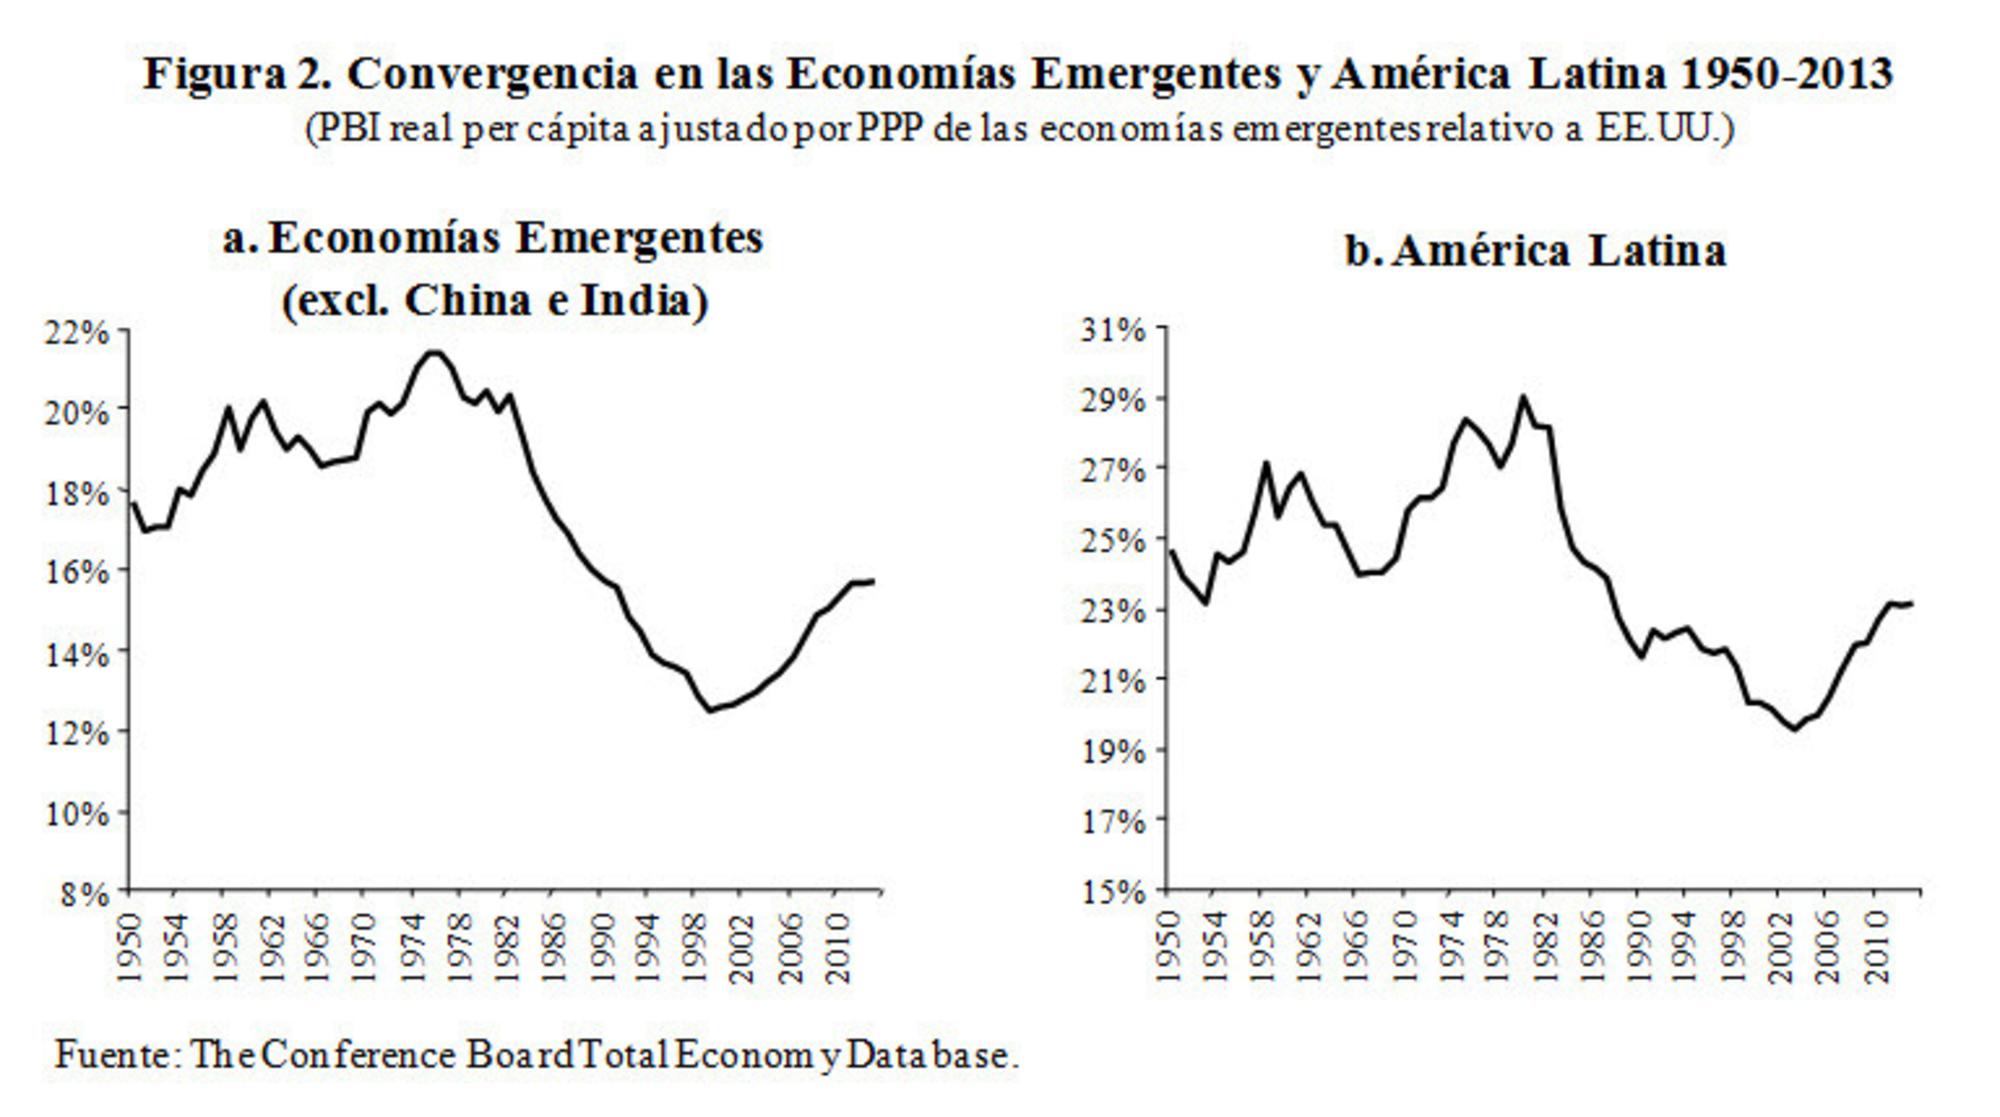 Convergencia economías emergentes y América Latina